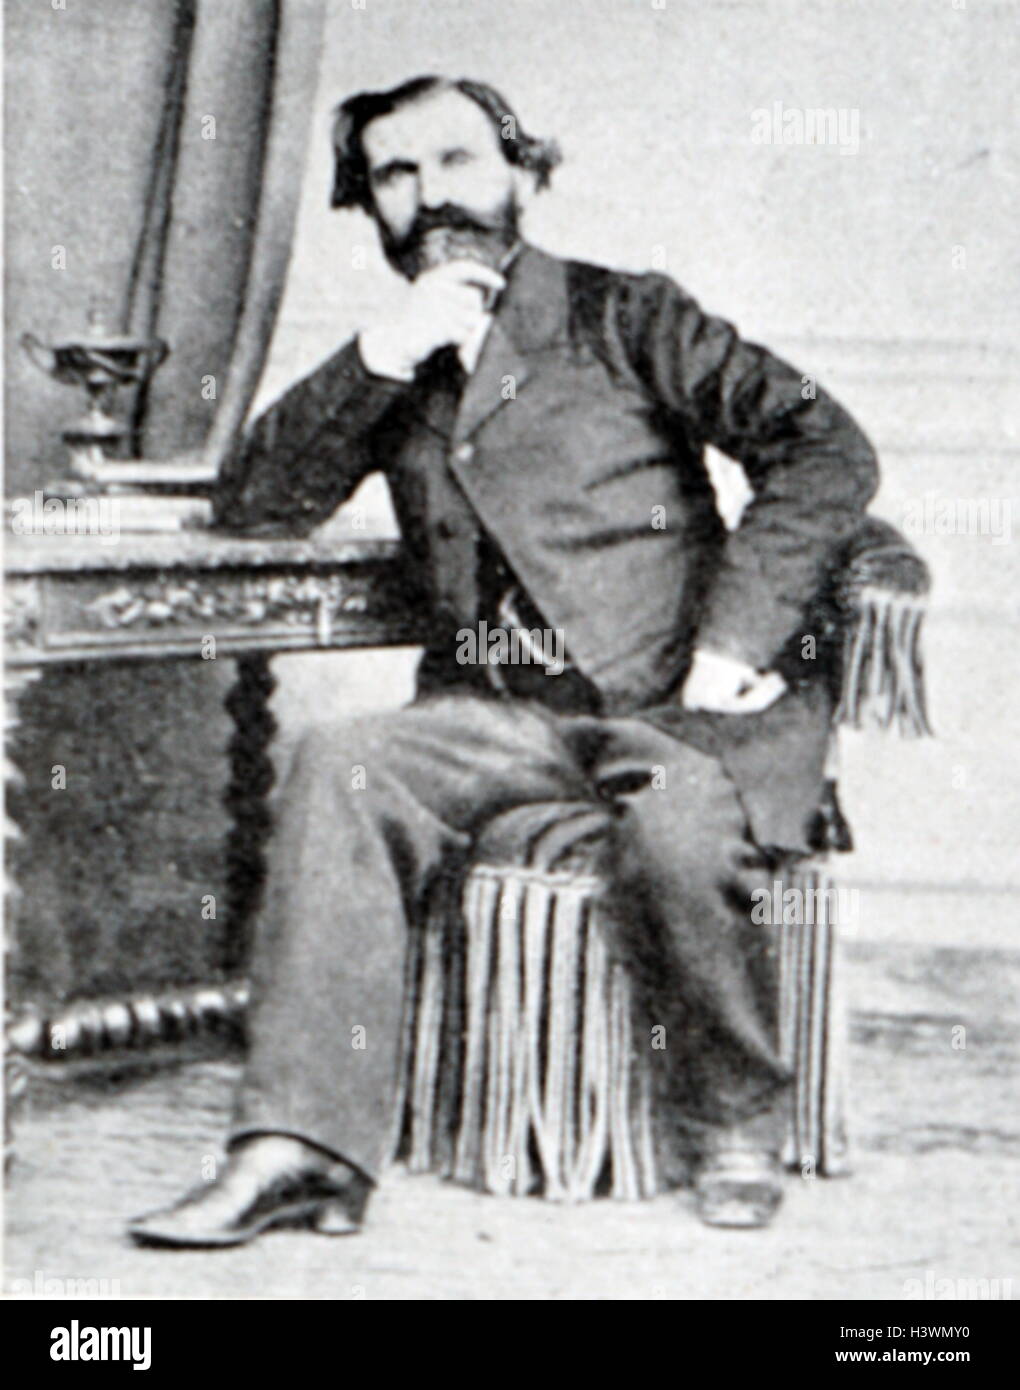 Portrait of Ritratto di Giuseppe Verdi (1813-1901) an Italian composer. By Giovanni Boldini (1842-1931) an Italian painter. Dated 19th Century Stock Photo